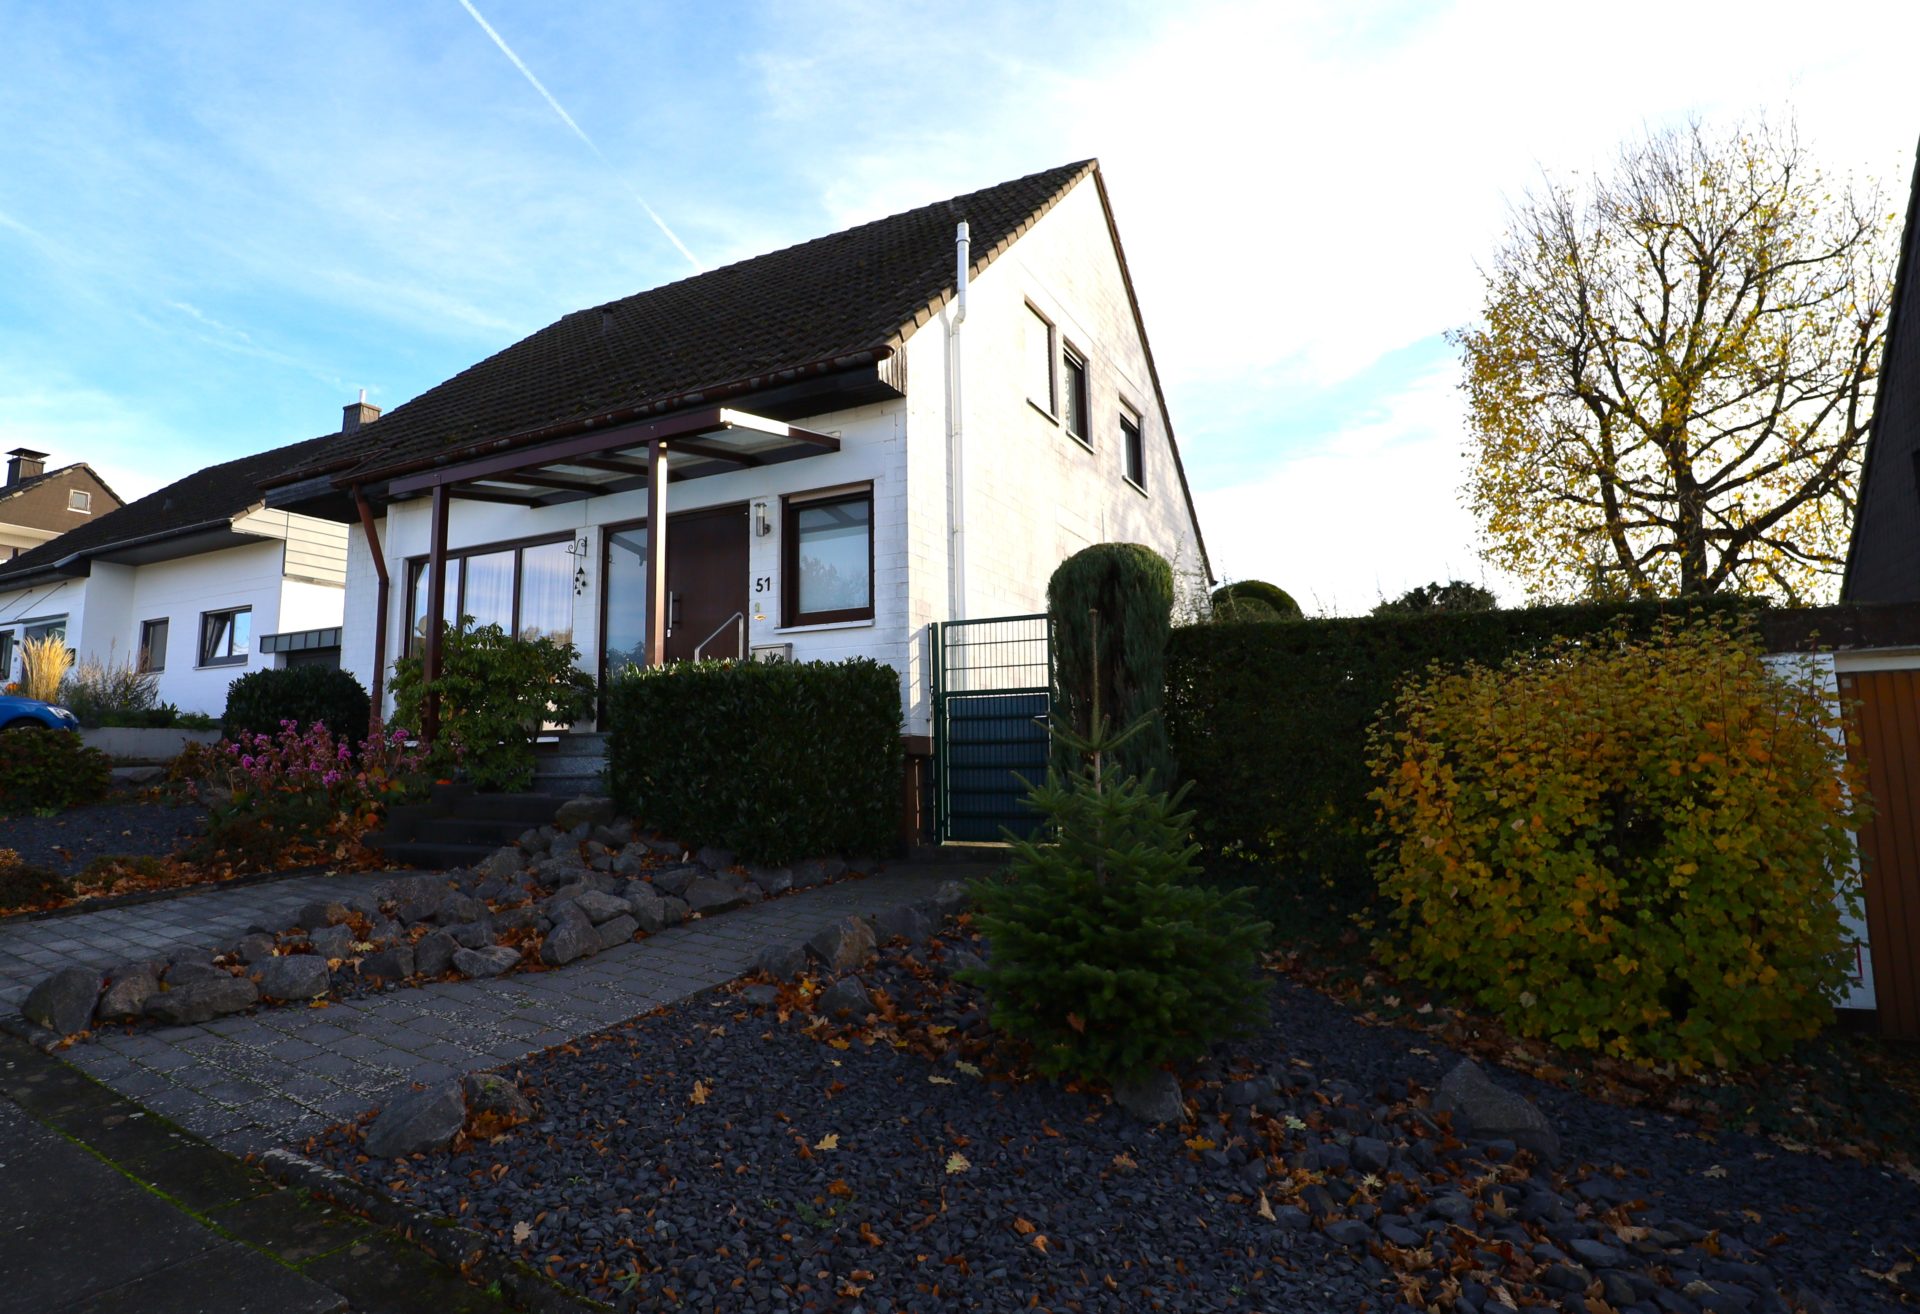 Swisttal-Heimerzheim: Attraktives freistehendes Einfamilienhaus in begehrter Wohnlage von Swisttal-Heimerzheim